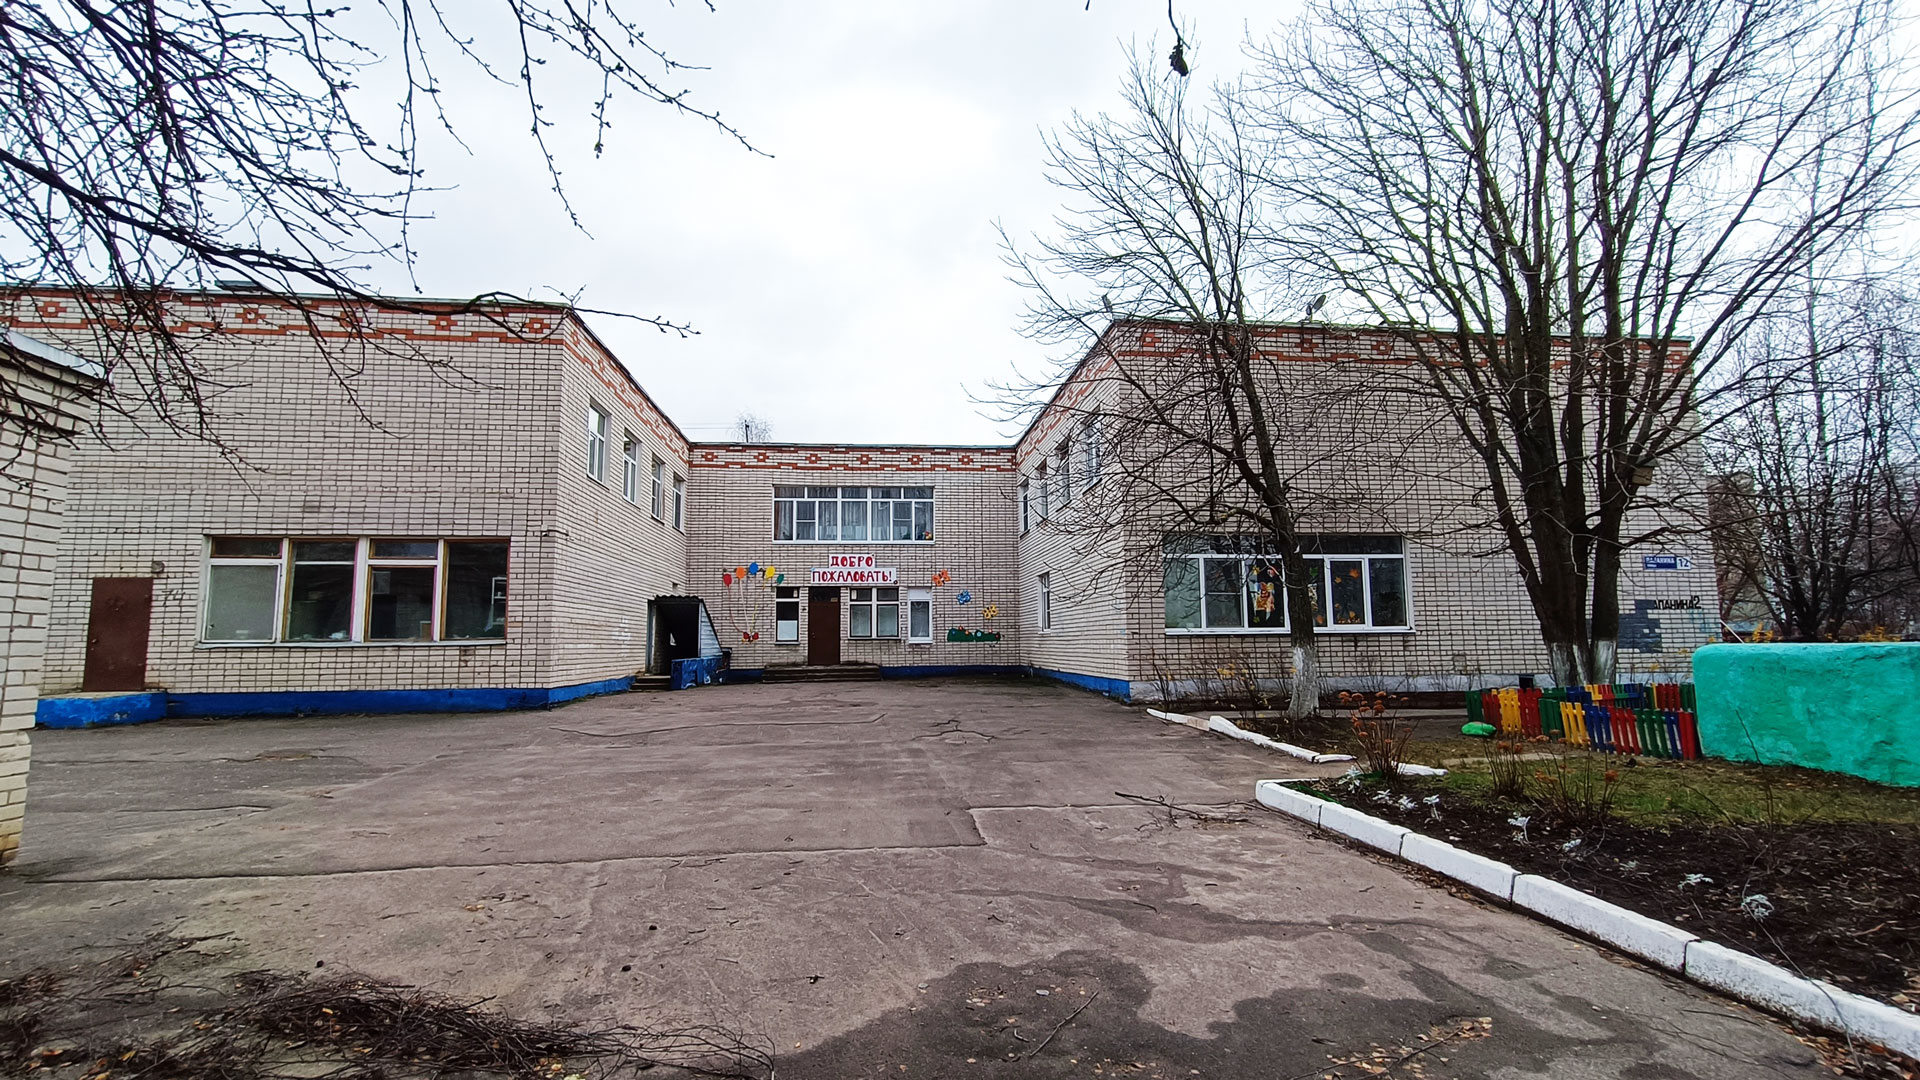 Детский сад 74 Ярославль: общий вид здания.